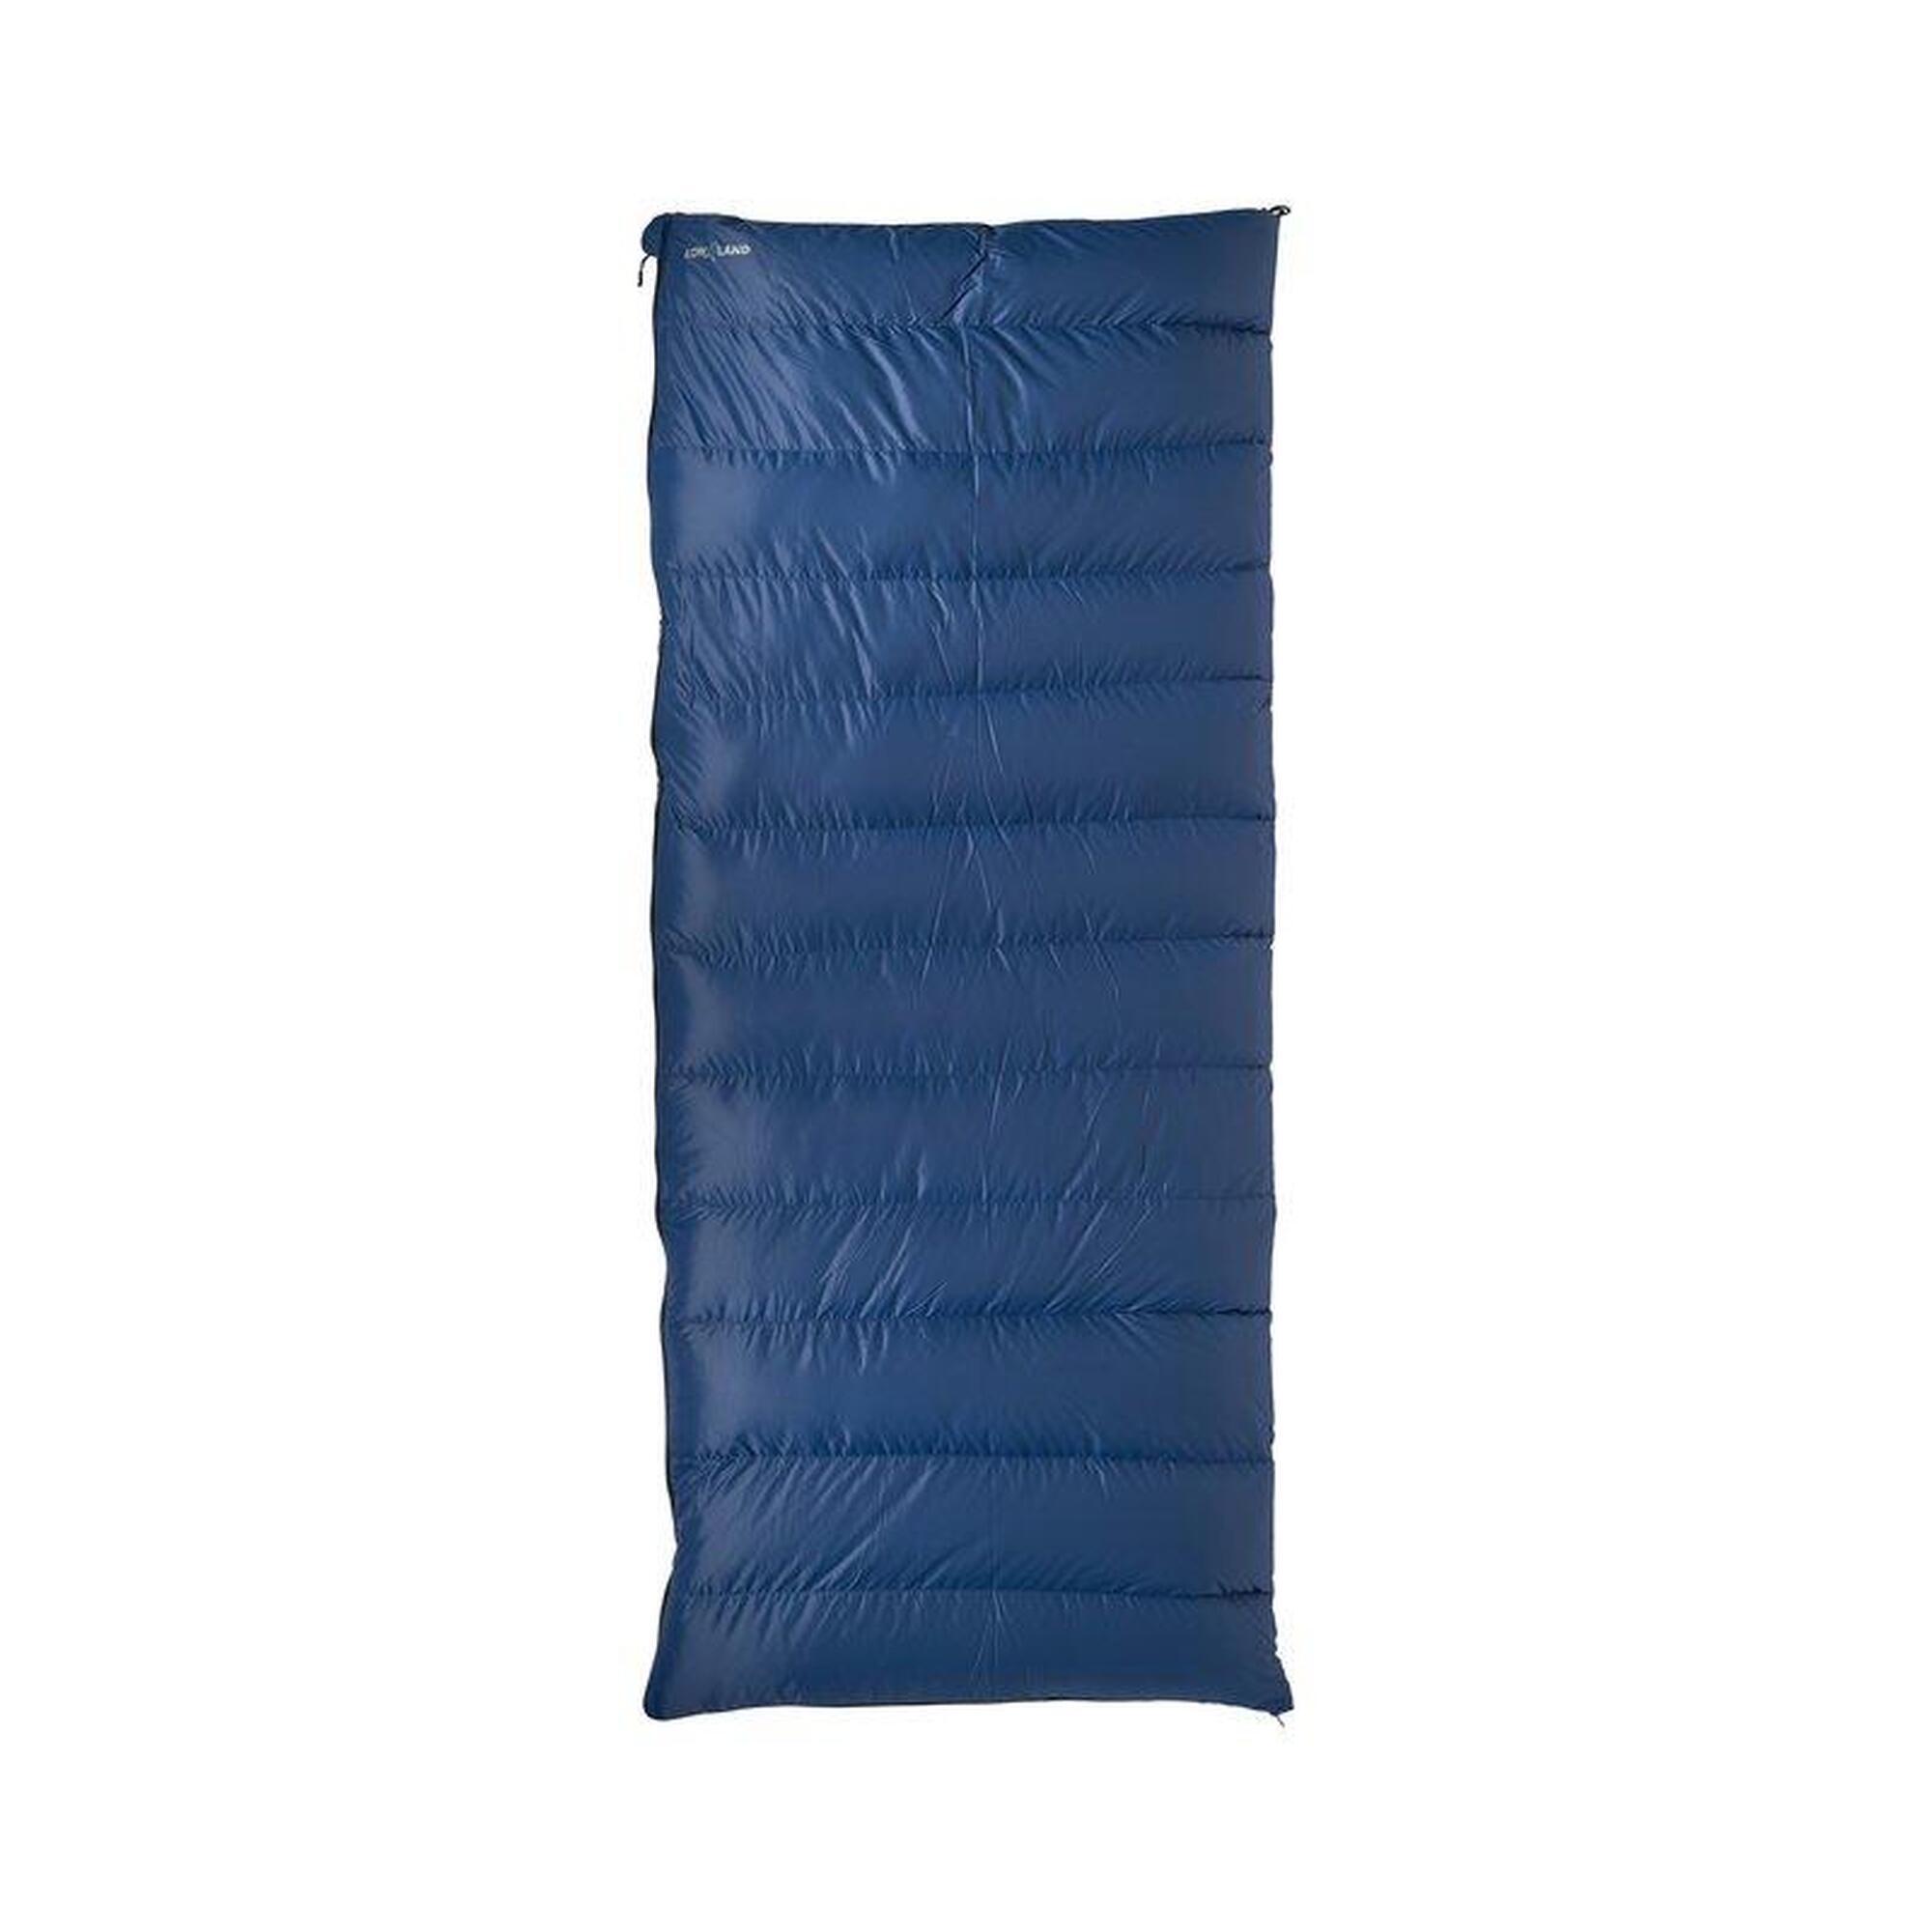 Companion NC 1- Saco-cama com cobertor de penas- Nylon/algodão- 200x80 cm- 0°C